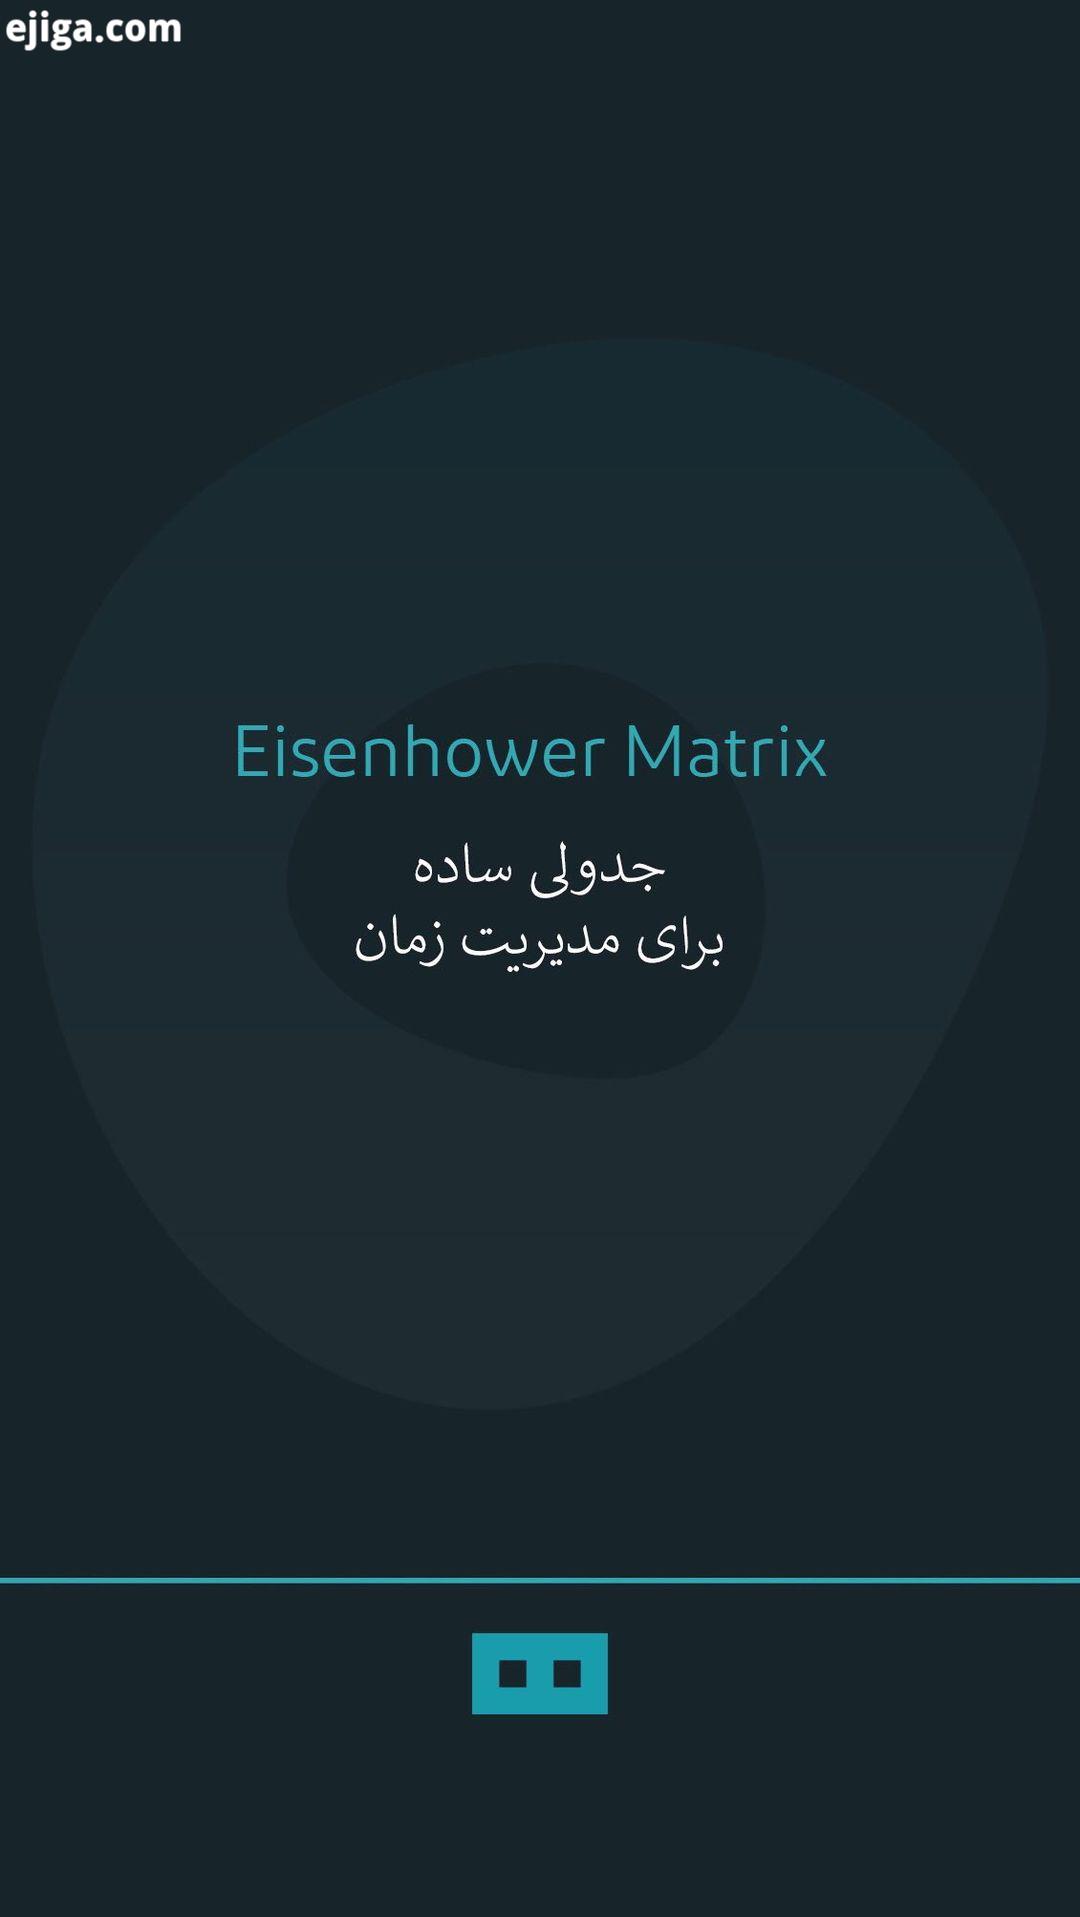 ...ماتریس آیزنهاور eisenhower matrix یکی از بهترین مدل های مدیریت زمان است آیزنهاور رئیس جمهور پیش